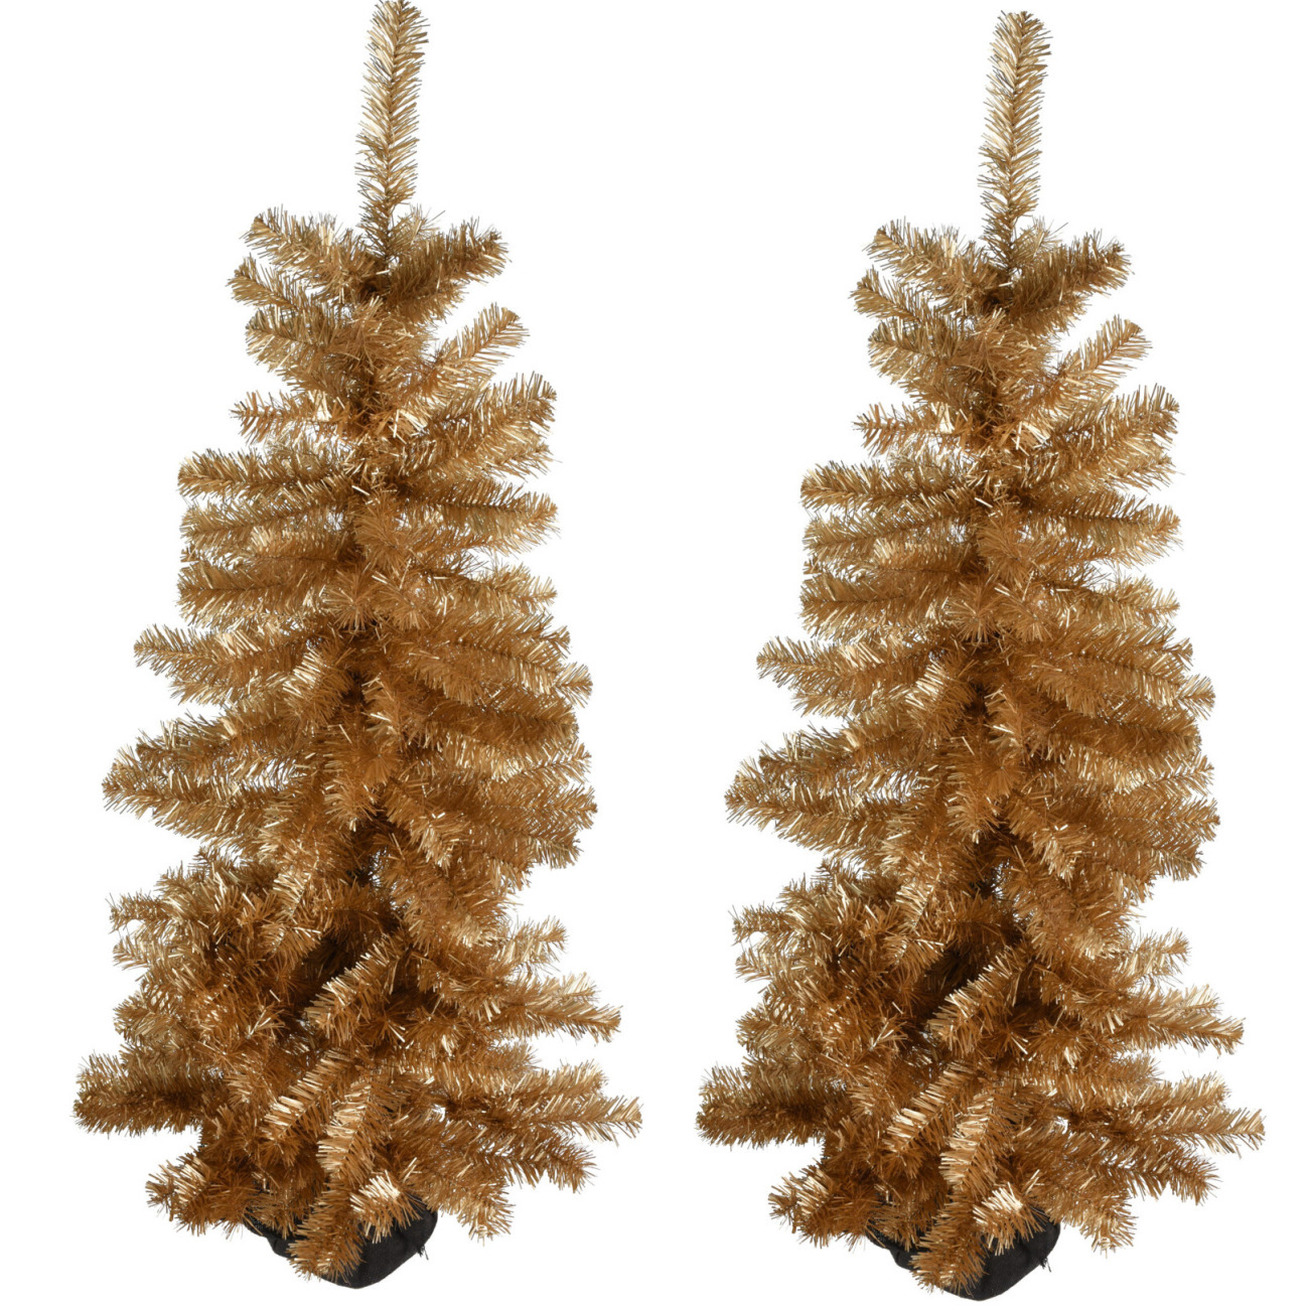 2x stuks kunstbomen-kunst kerstbomen goud 120 cm